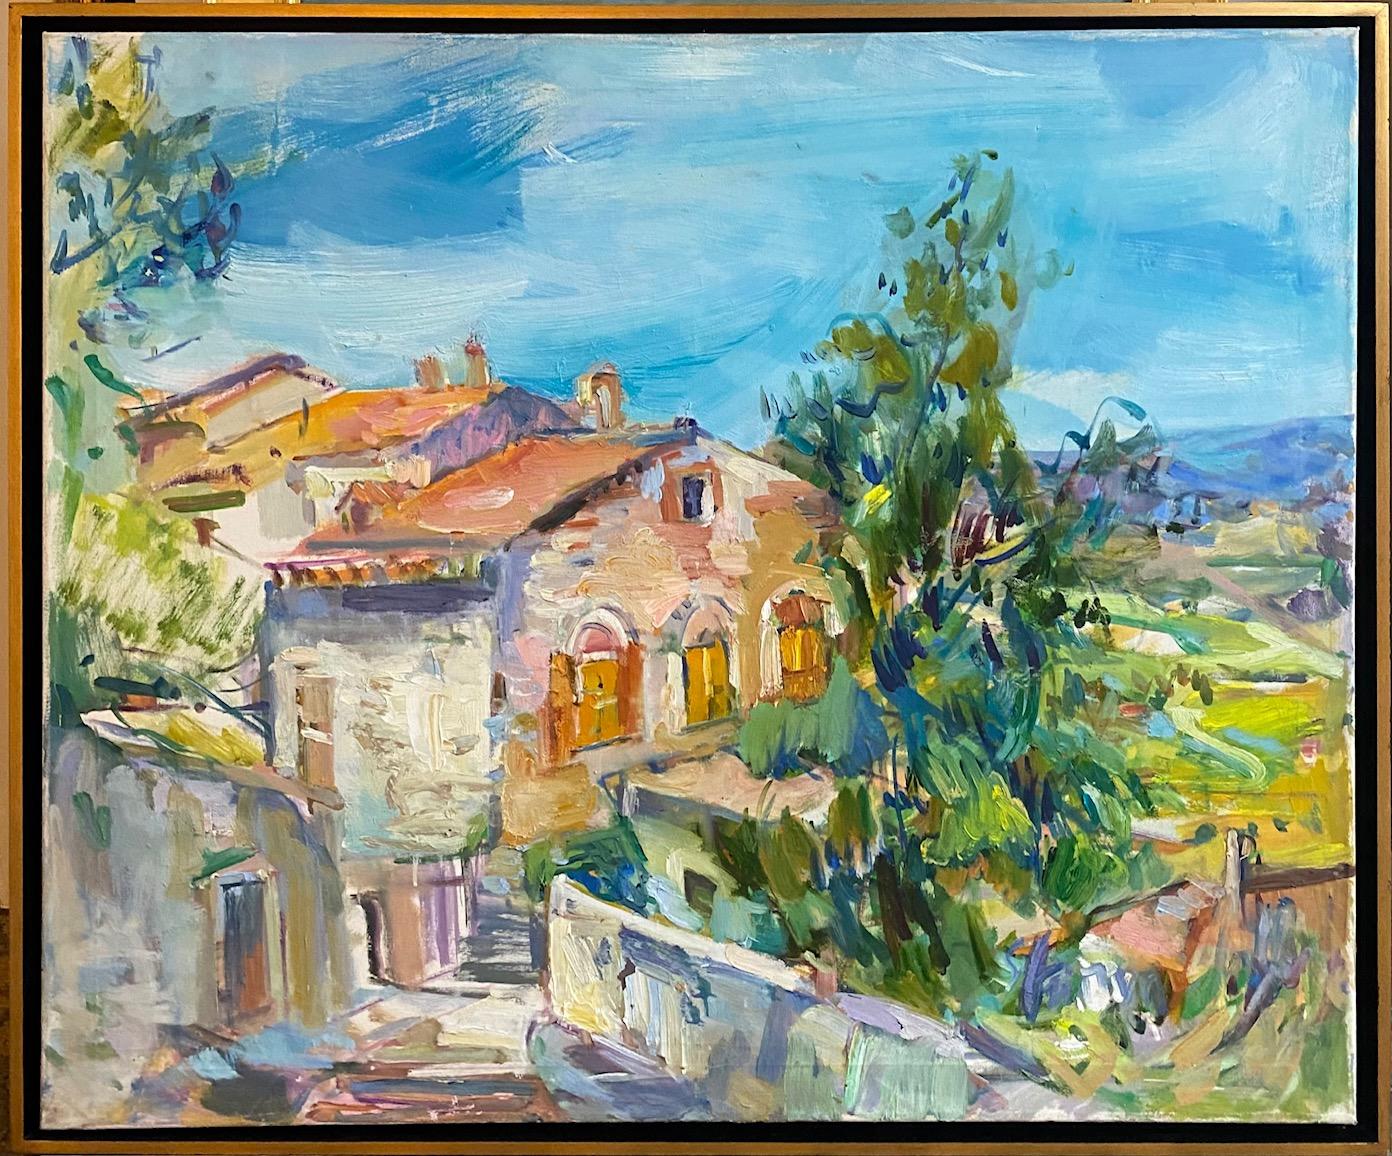 Sonia Grineva Abstract Painting – Todi, Umbrien, Original 30x36, abstrakte expressionistische italienische Landschaft des Expressionismus